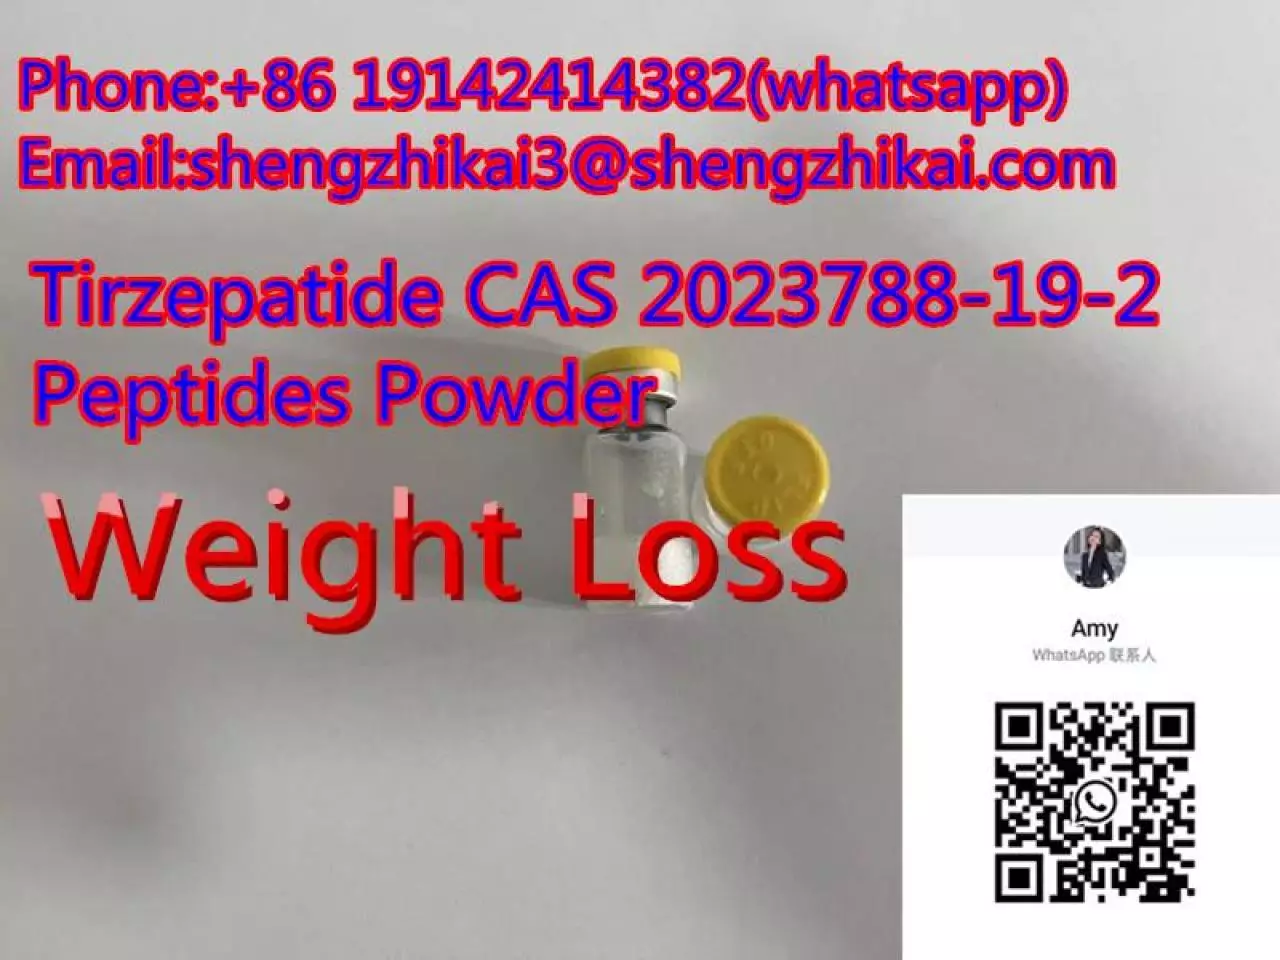 مصنع توريد Tirzepatide Gip\GLP-1 CAS 2023788-19-2 لتخفيف الوزن - 7/9